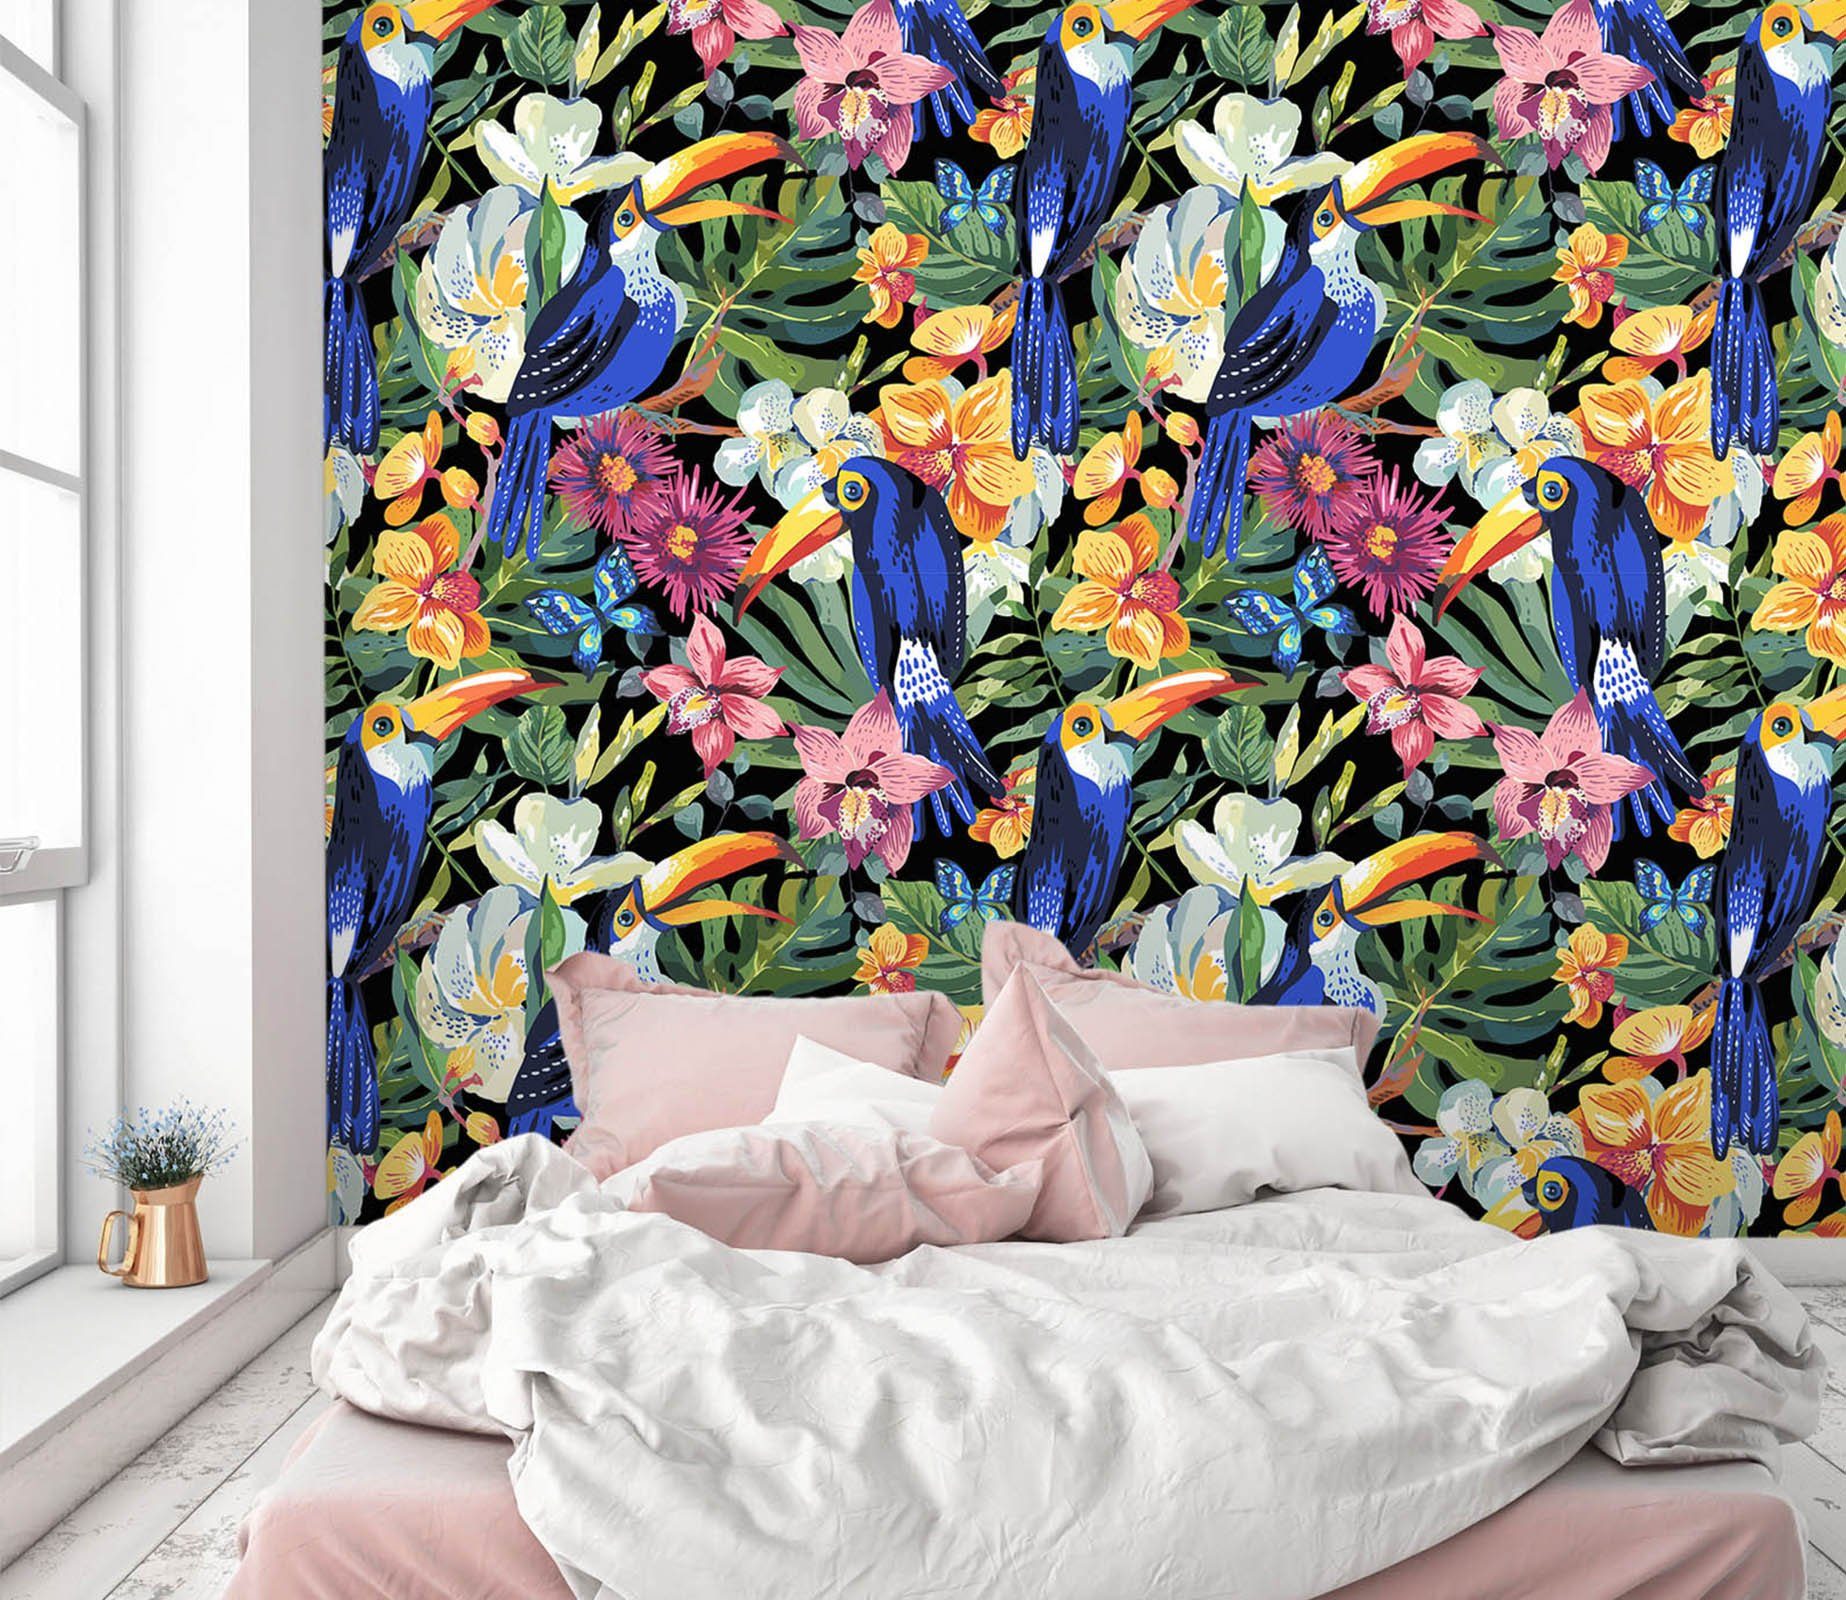 3D Blue Parrot Flower 50 Wall Murals Wallpaper AJ Wallpaper 2 